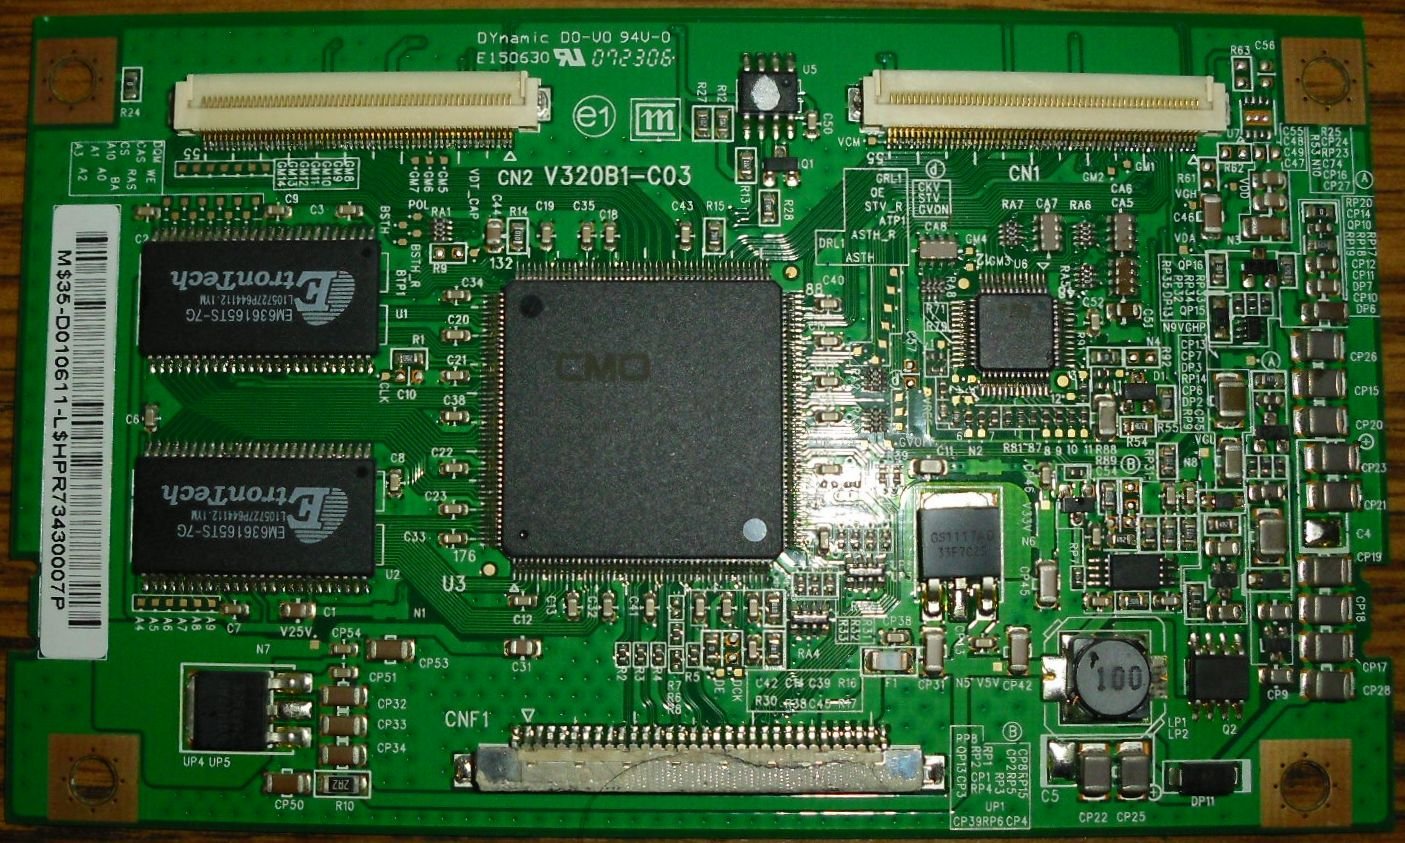 T-CON Board  V320B1-C03